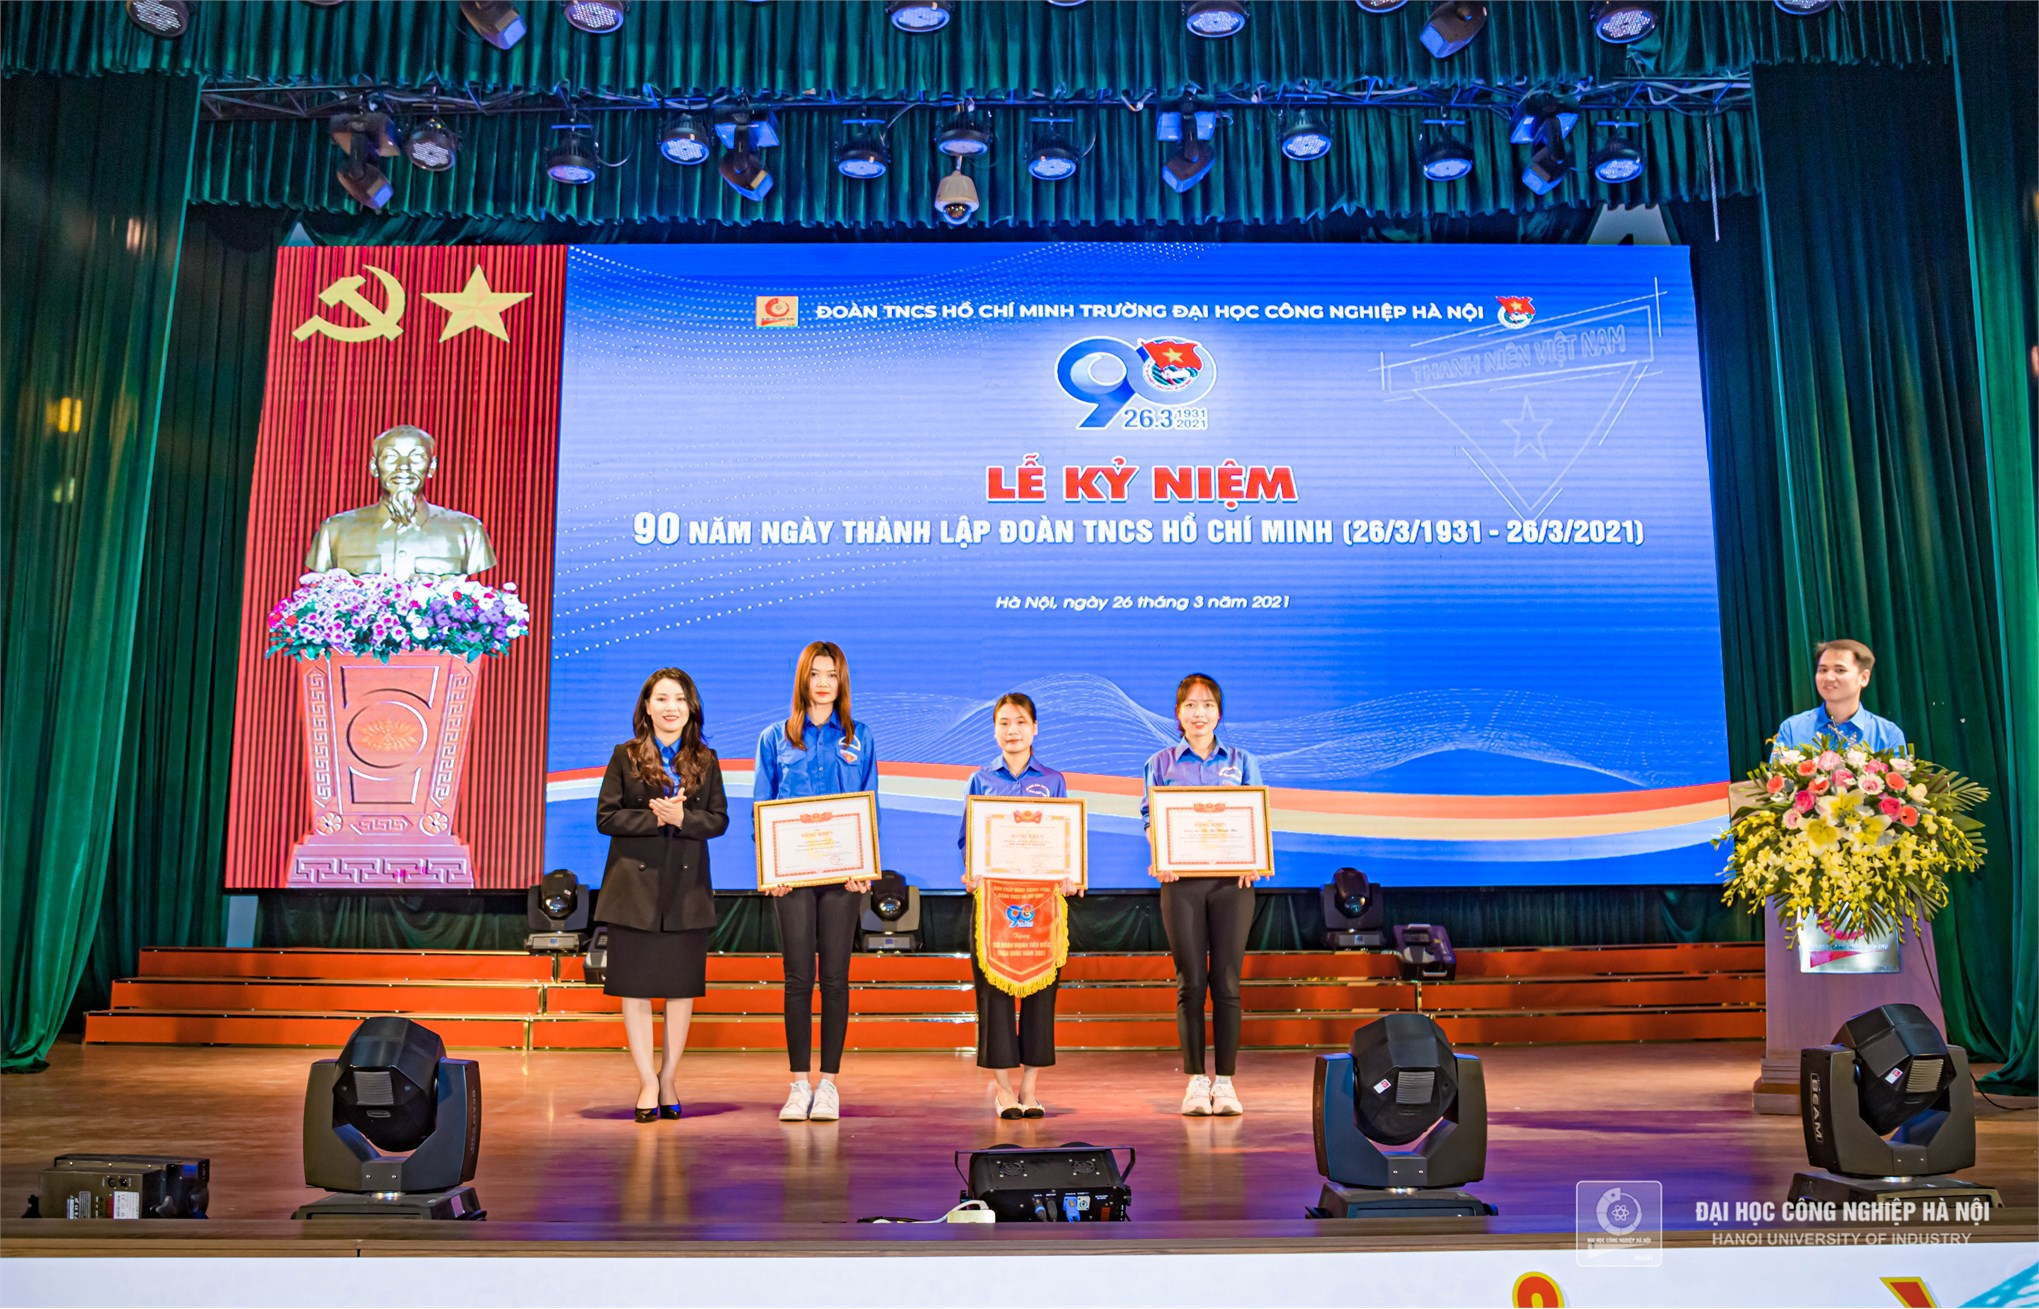 Tuổi trẻ Đại học Công nghiệp Hà Nội kỷ niệm 90 năm ngày thành lập Đoàn TNCS Hồ Chí Minh